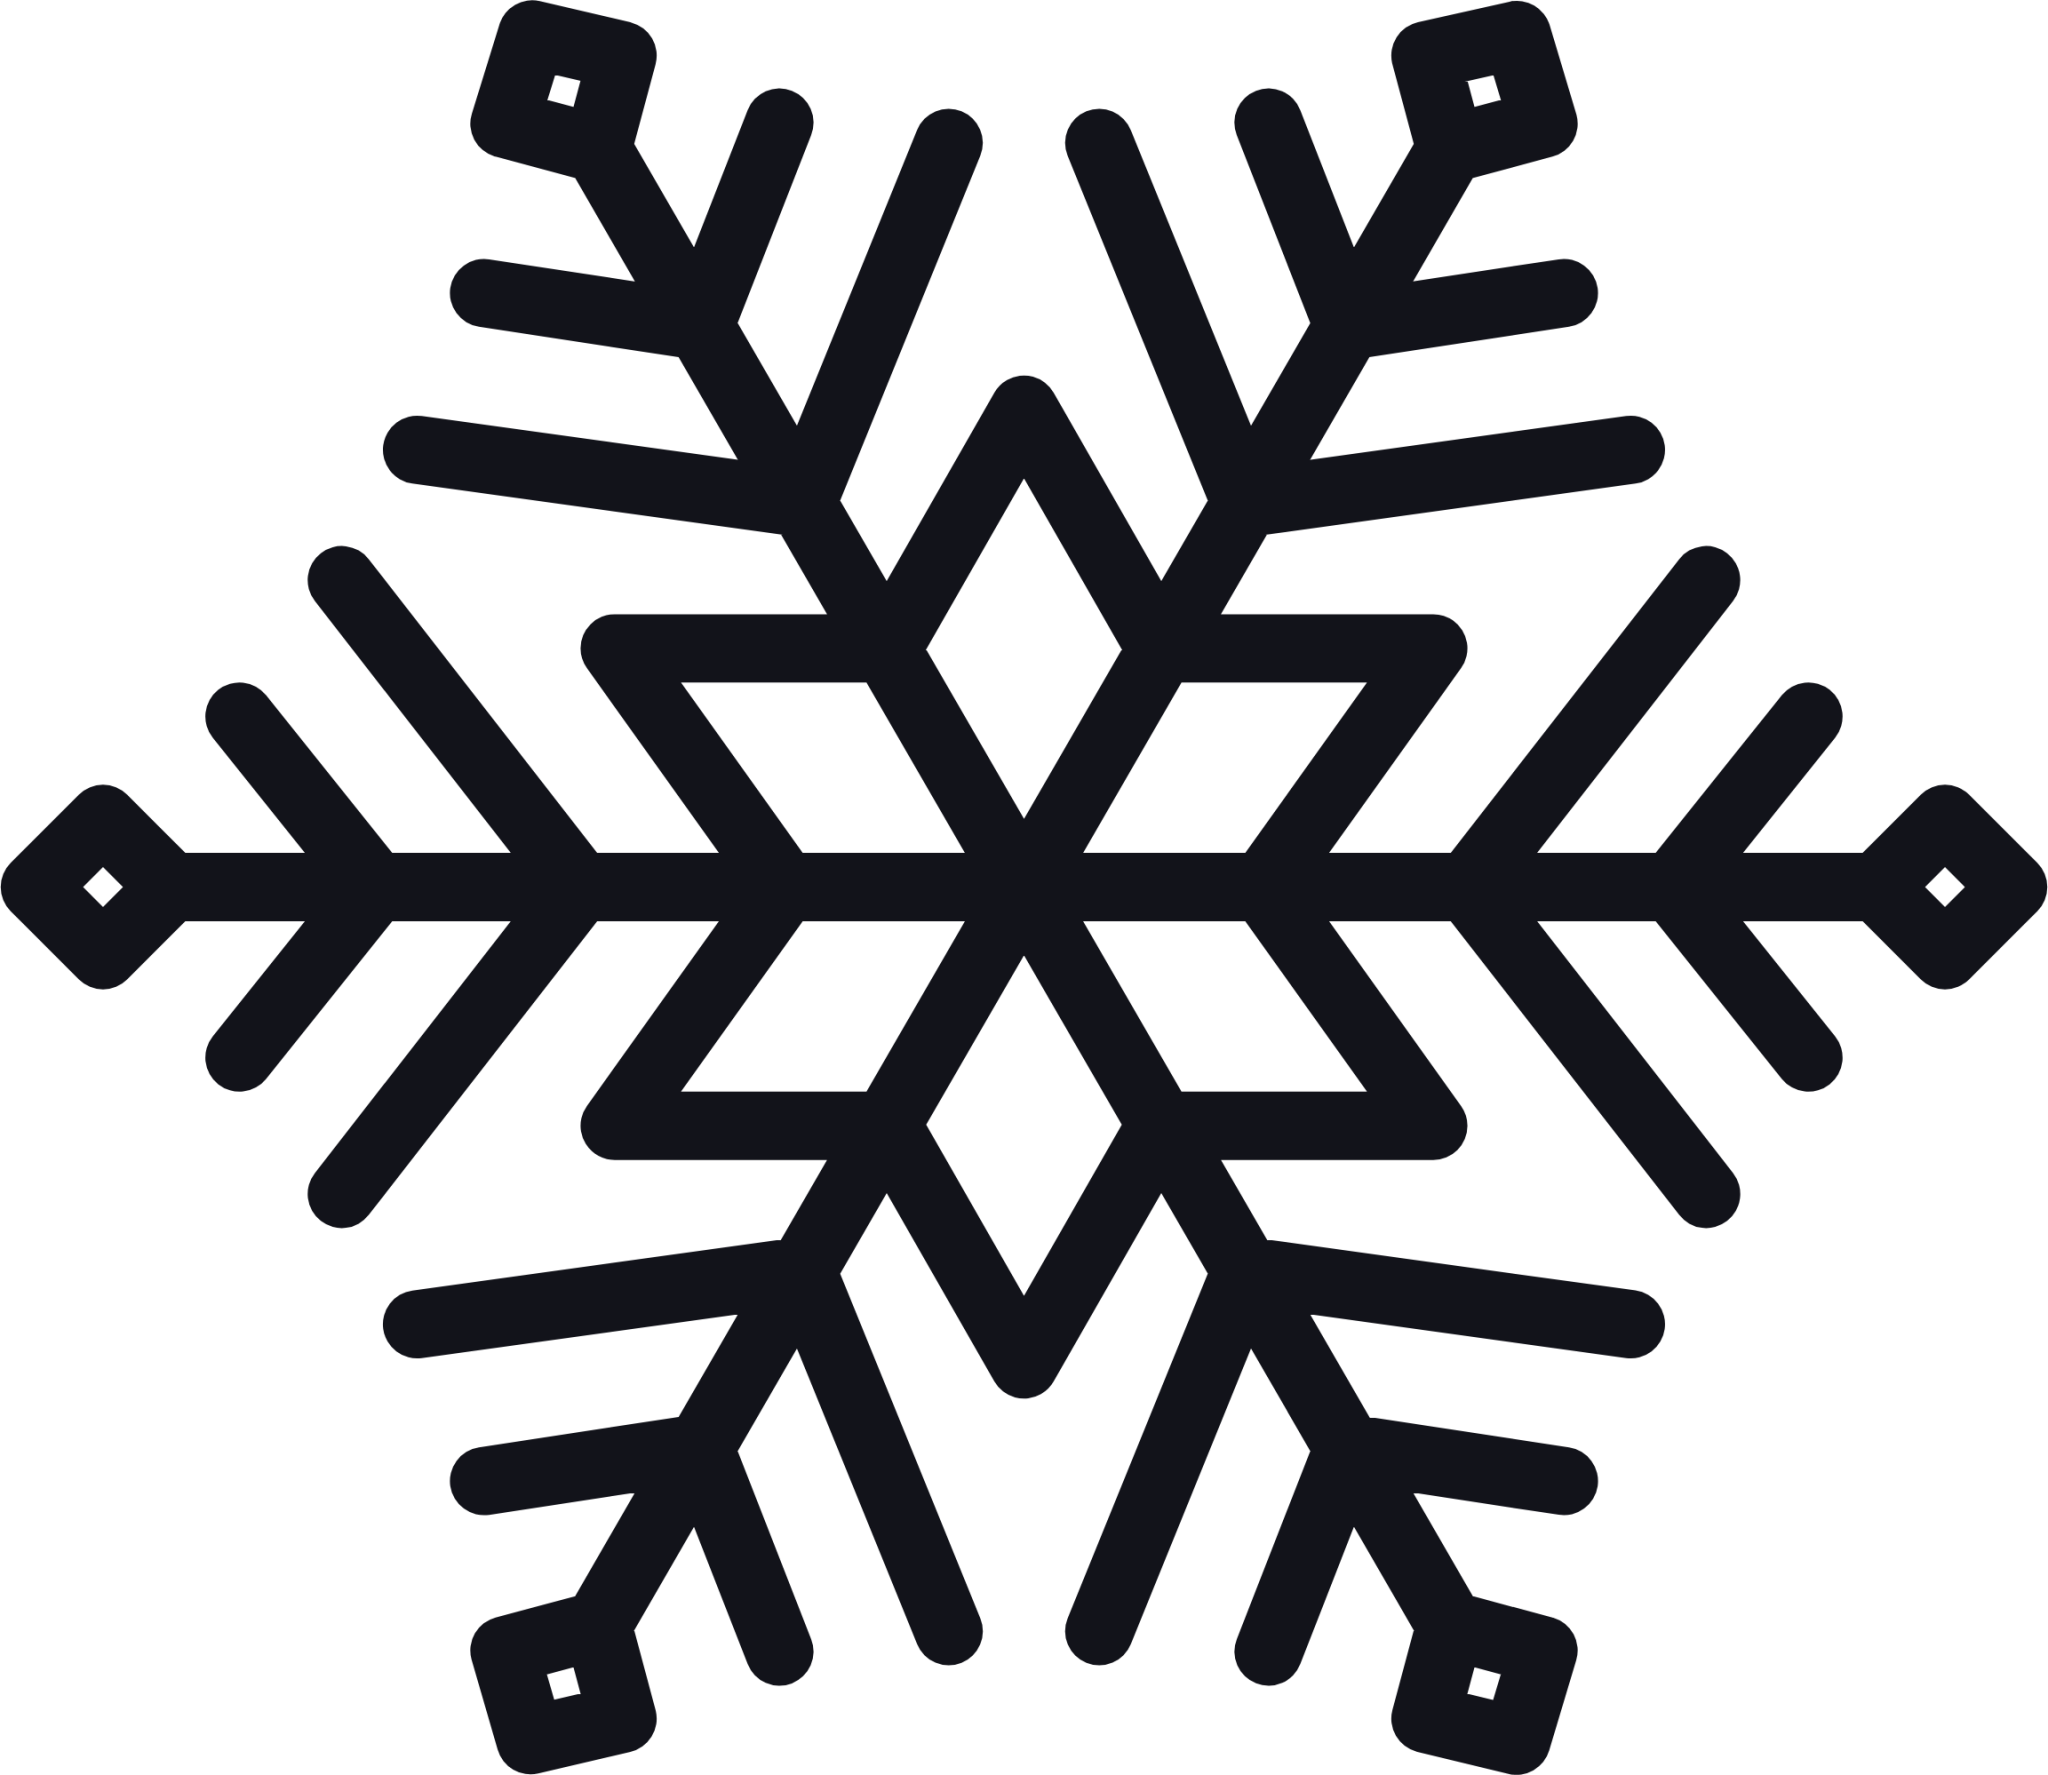 snowflake symbol png